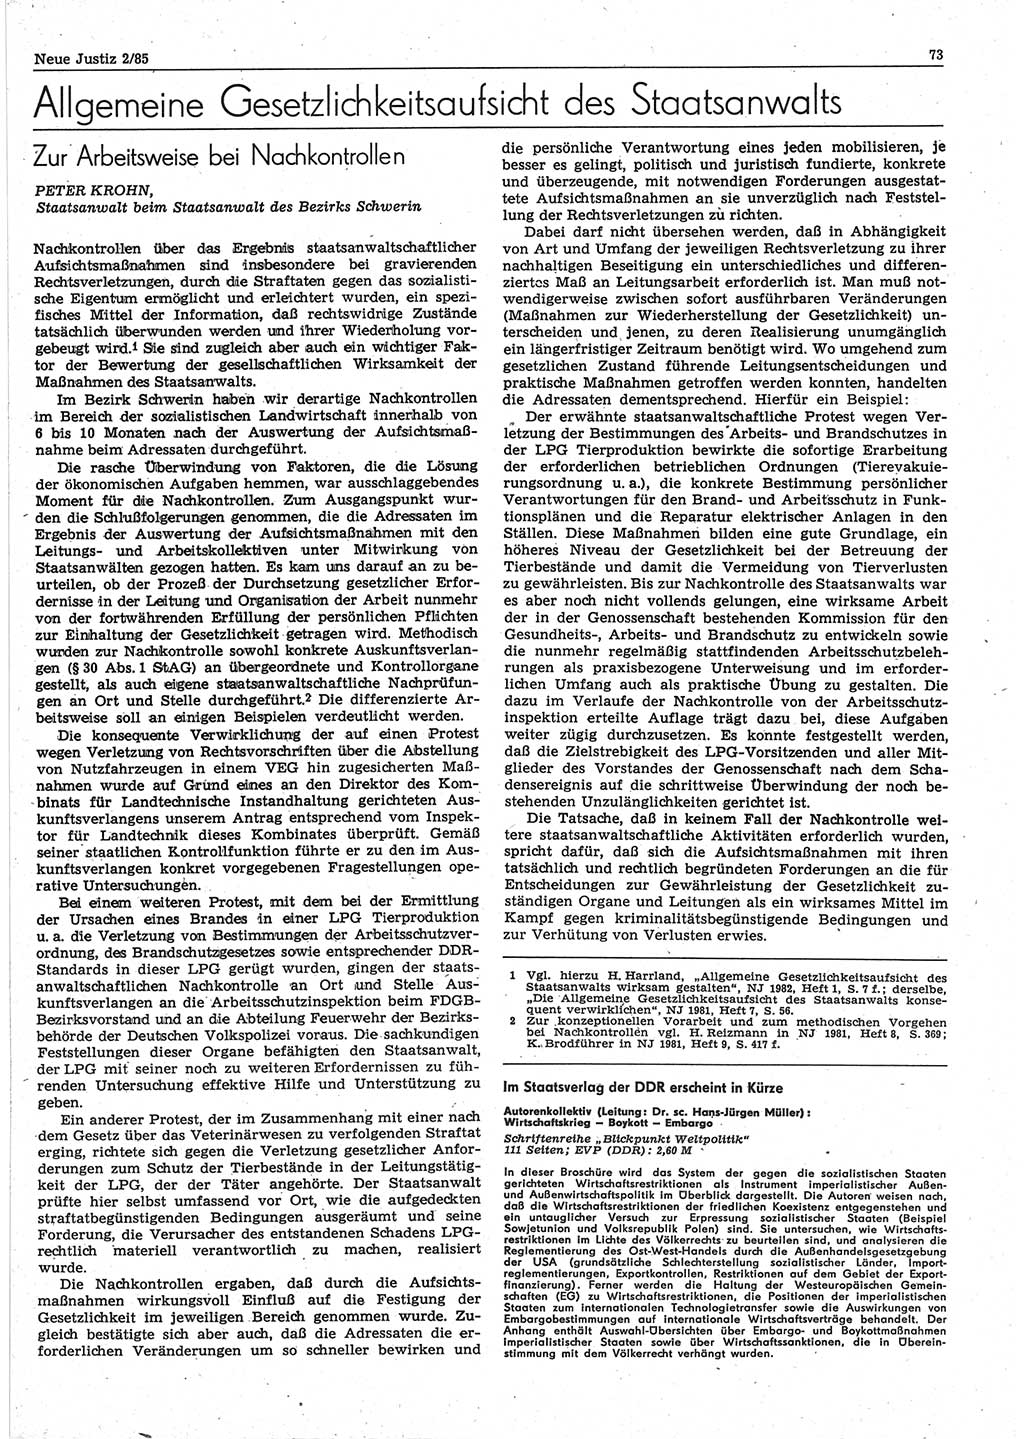 Neue Justiz (NJ), Zeitschrift für sozialistisches Recht und Gesetzlichkeit [Deutsche Demokratische Republik (DDR)], 39. Jahrgang 1985, Seite 73 (NJ DDR 1985, S. 73)